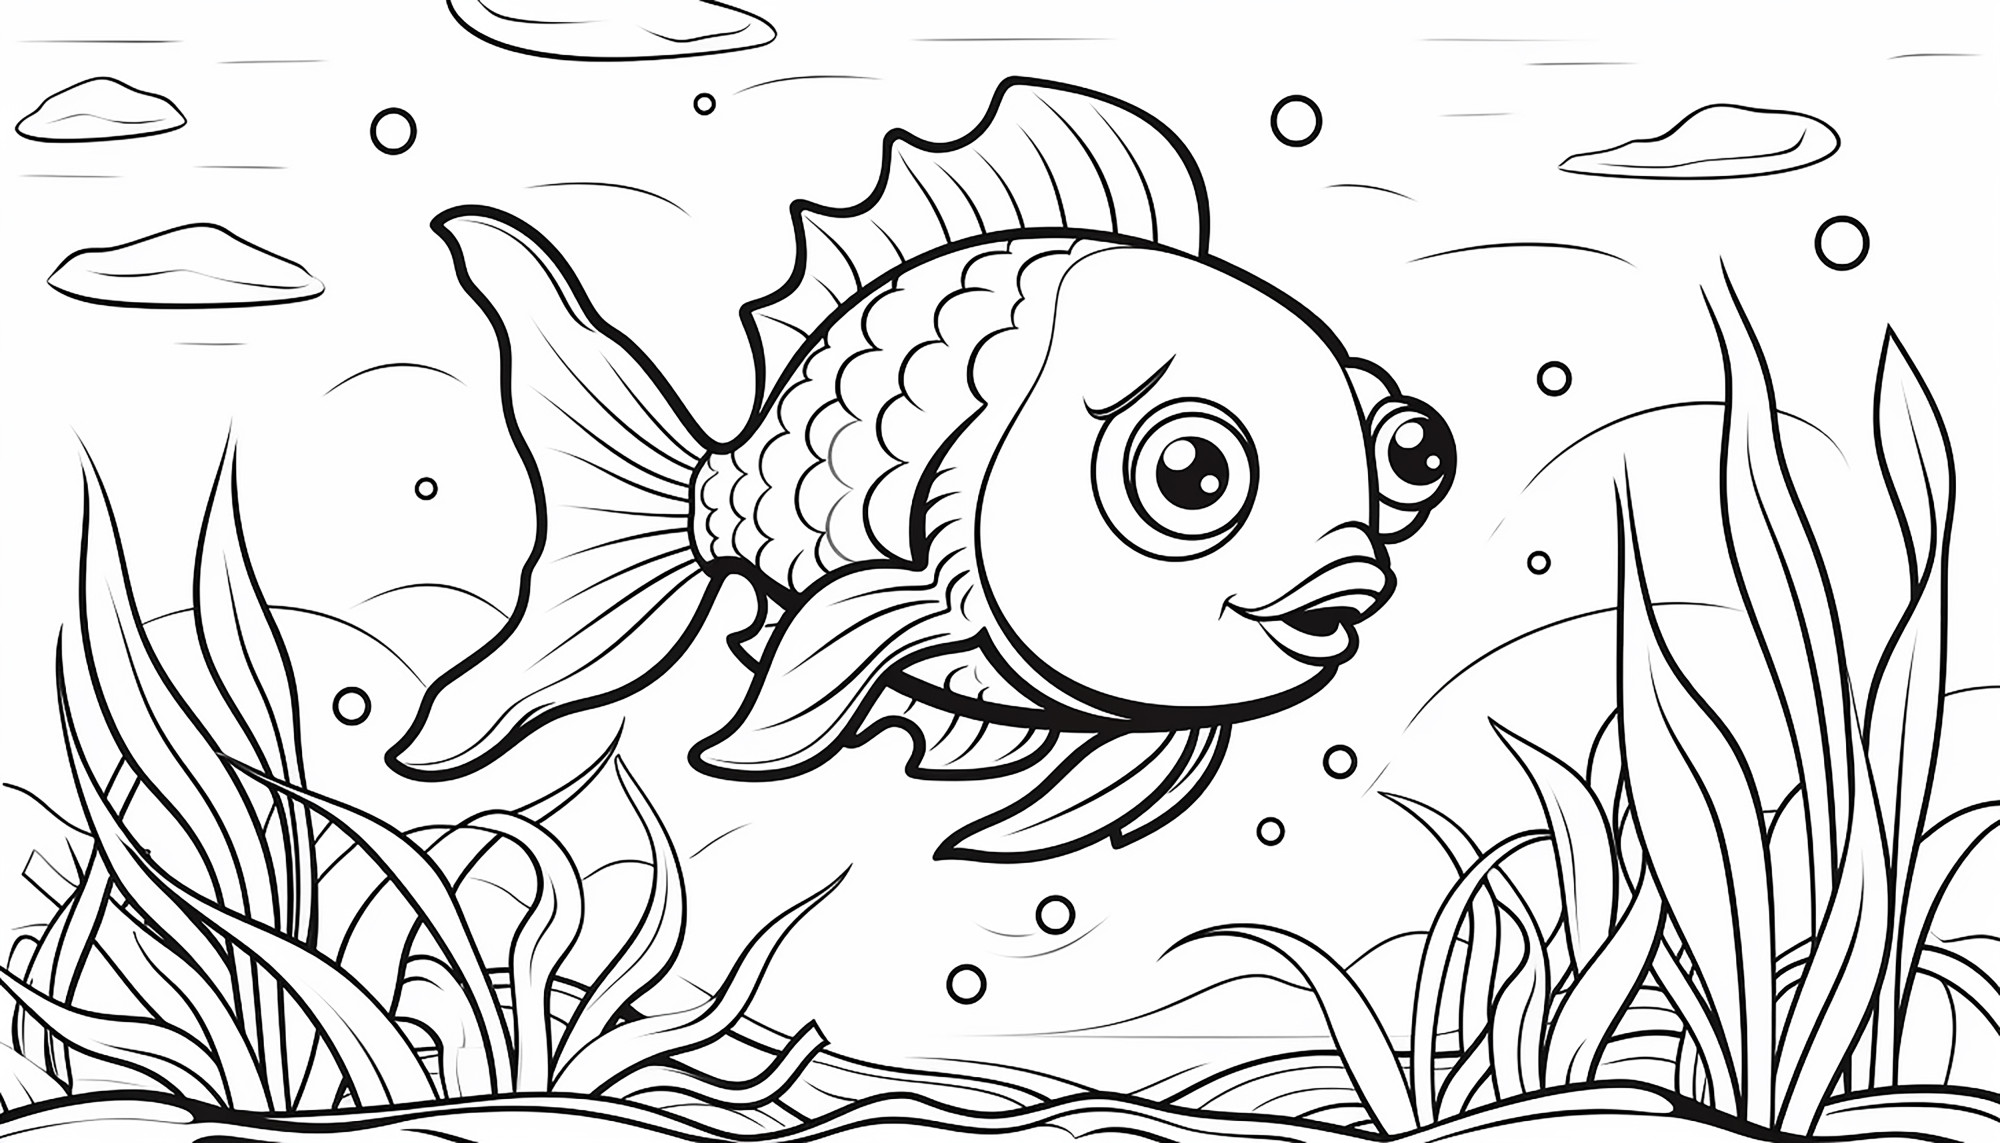 Раскраска для детей: рыба в озере на фоне водорослей